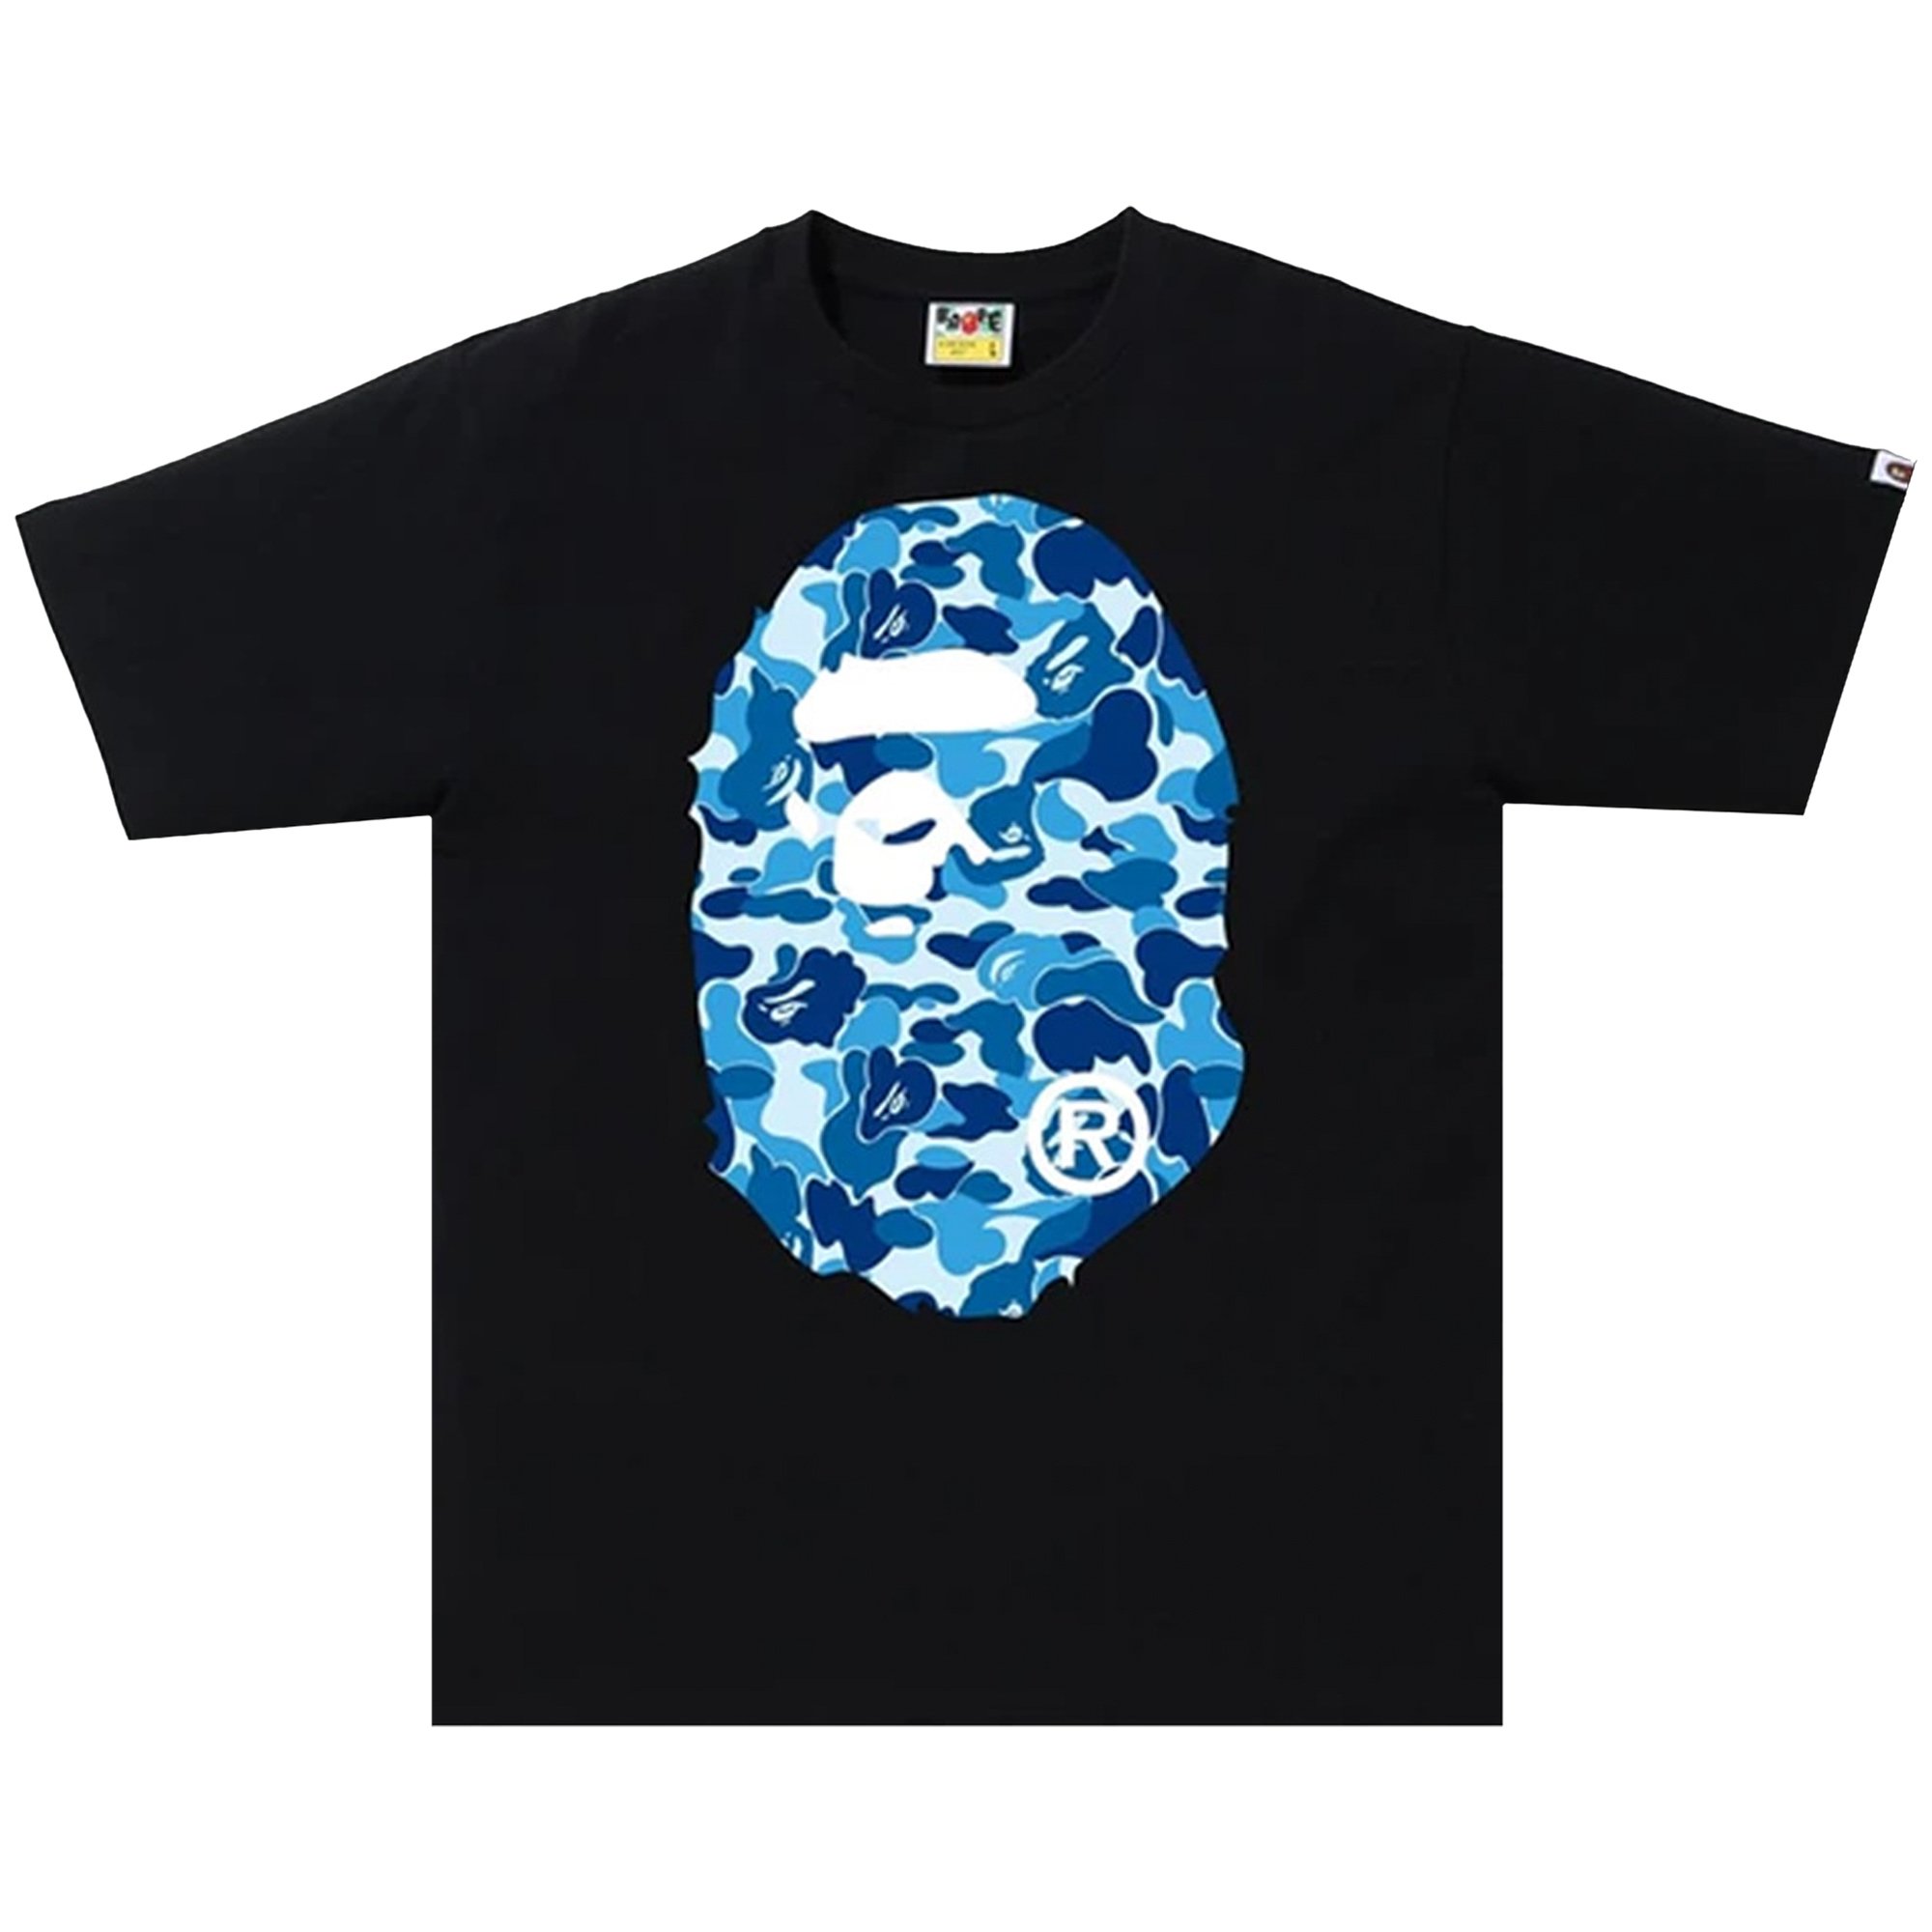 BAPE ABC Камуфляжная футболка с головой большой обезьяны, цвет черный/синий камуфляжная футболка bape abc черный синий